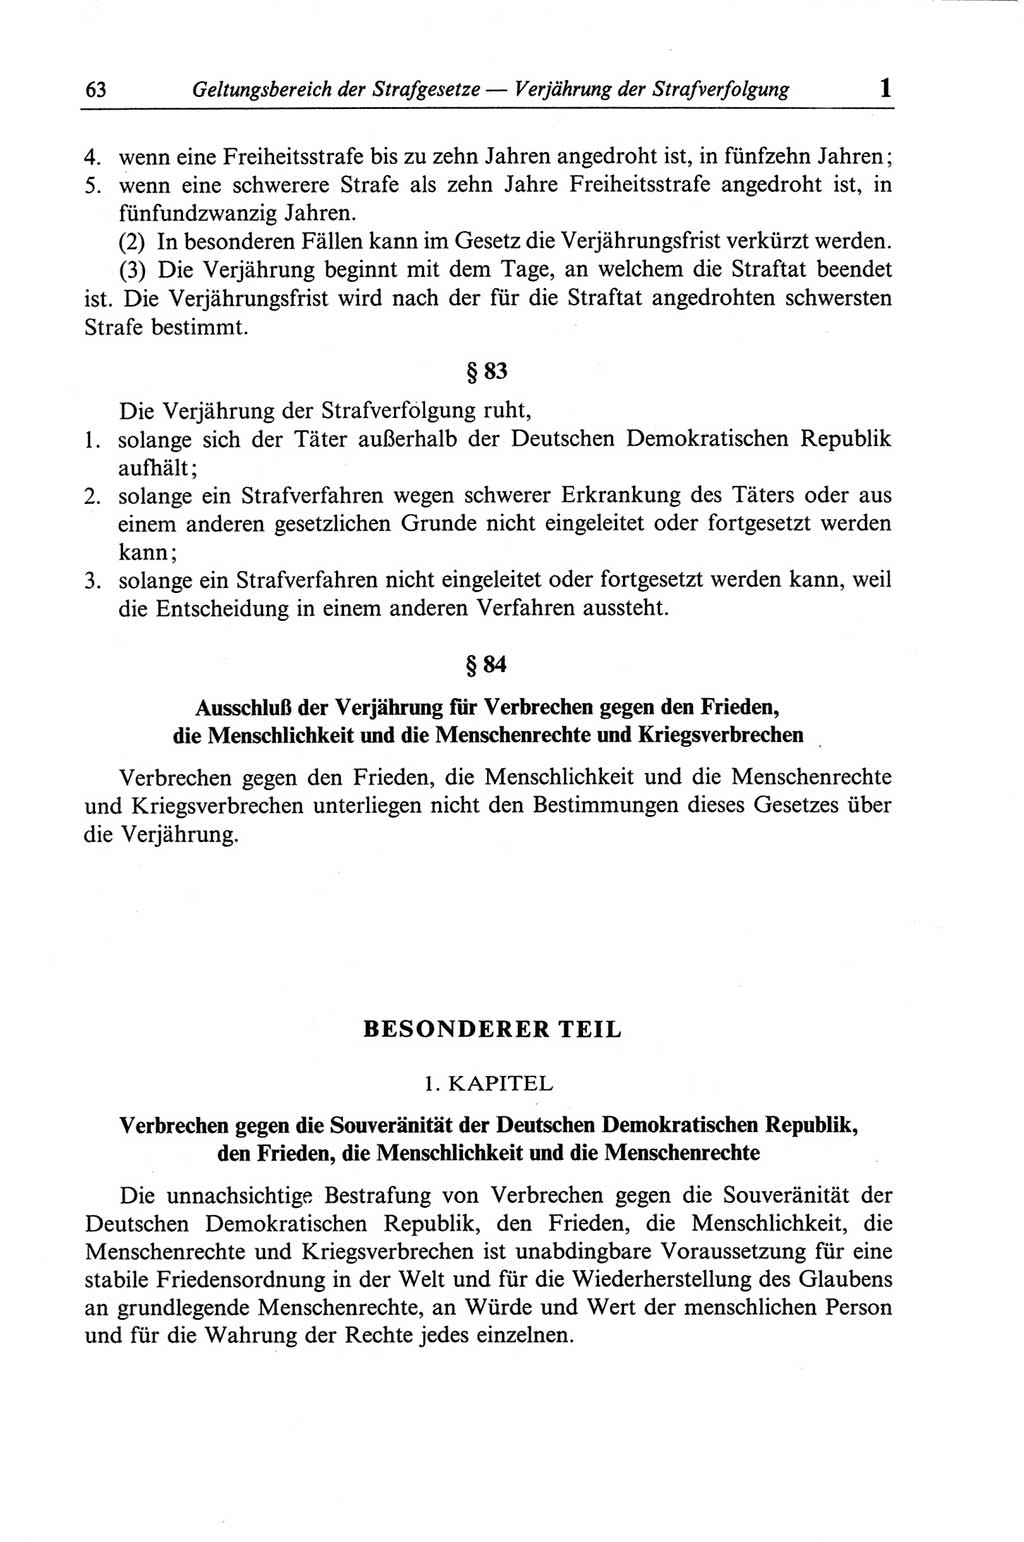 Strafgesetzbuch (StGB) der Deutschen Demokratischen Republik (DDR) und angrenzende Gesetze und Bestimmungen 1968, Seite 63 (StGB Ges. Best. DDR 1968, S. 63)